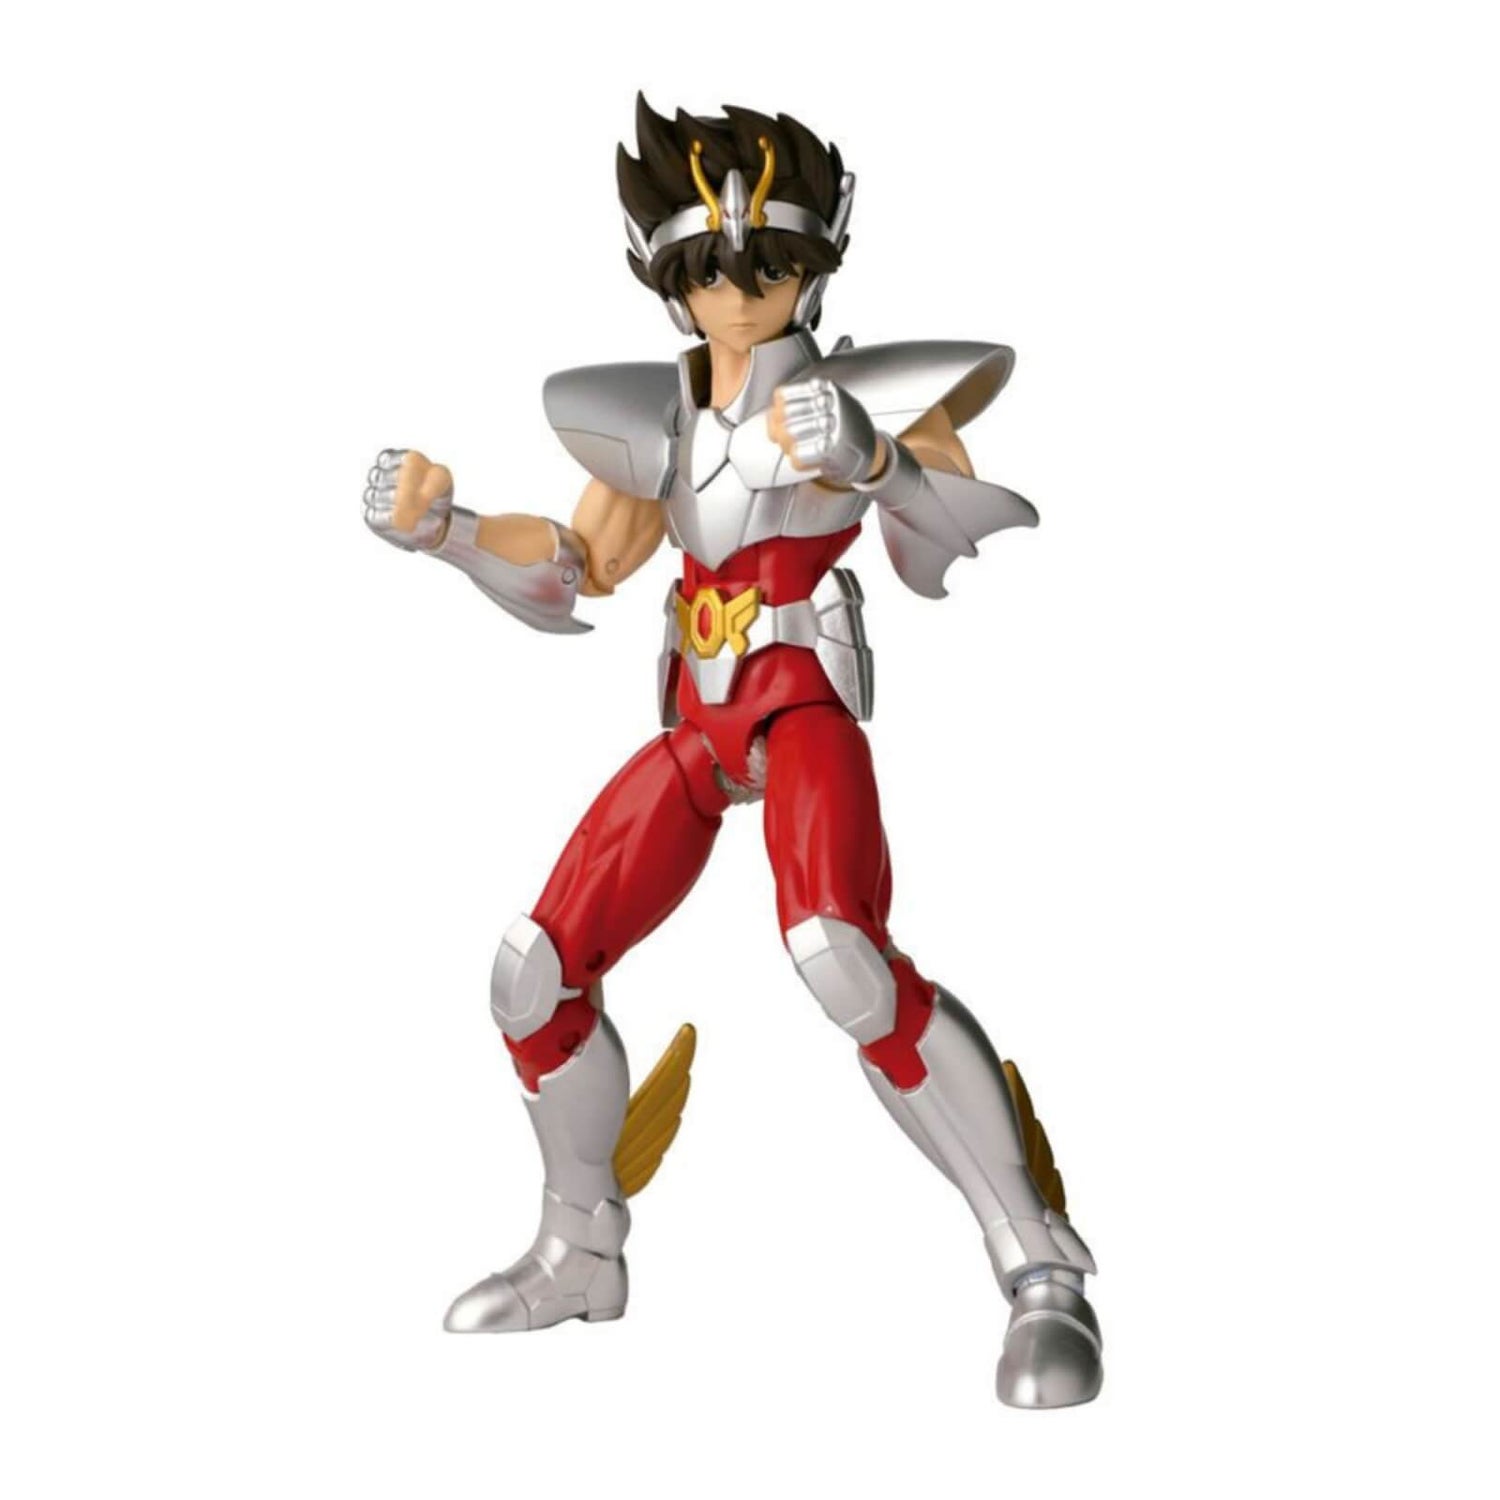 Bandai Anime Heroes Pegasus Seiya Action Figure Merchandise - Zavvi US